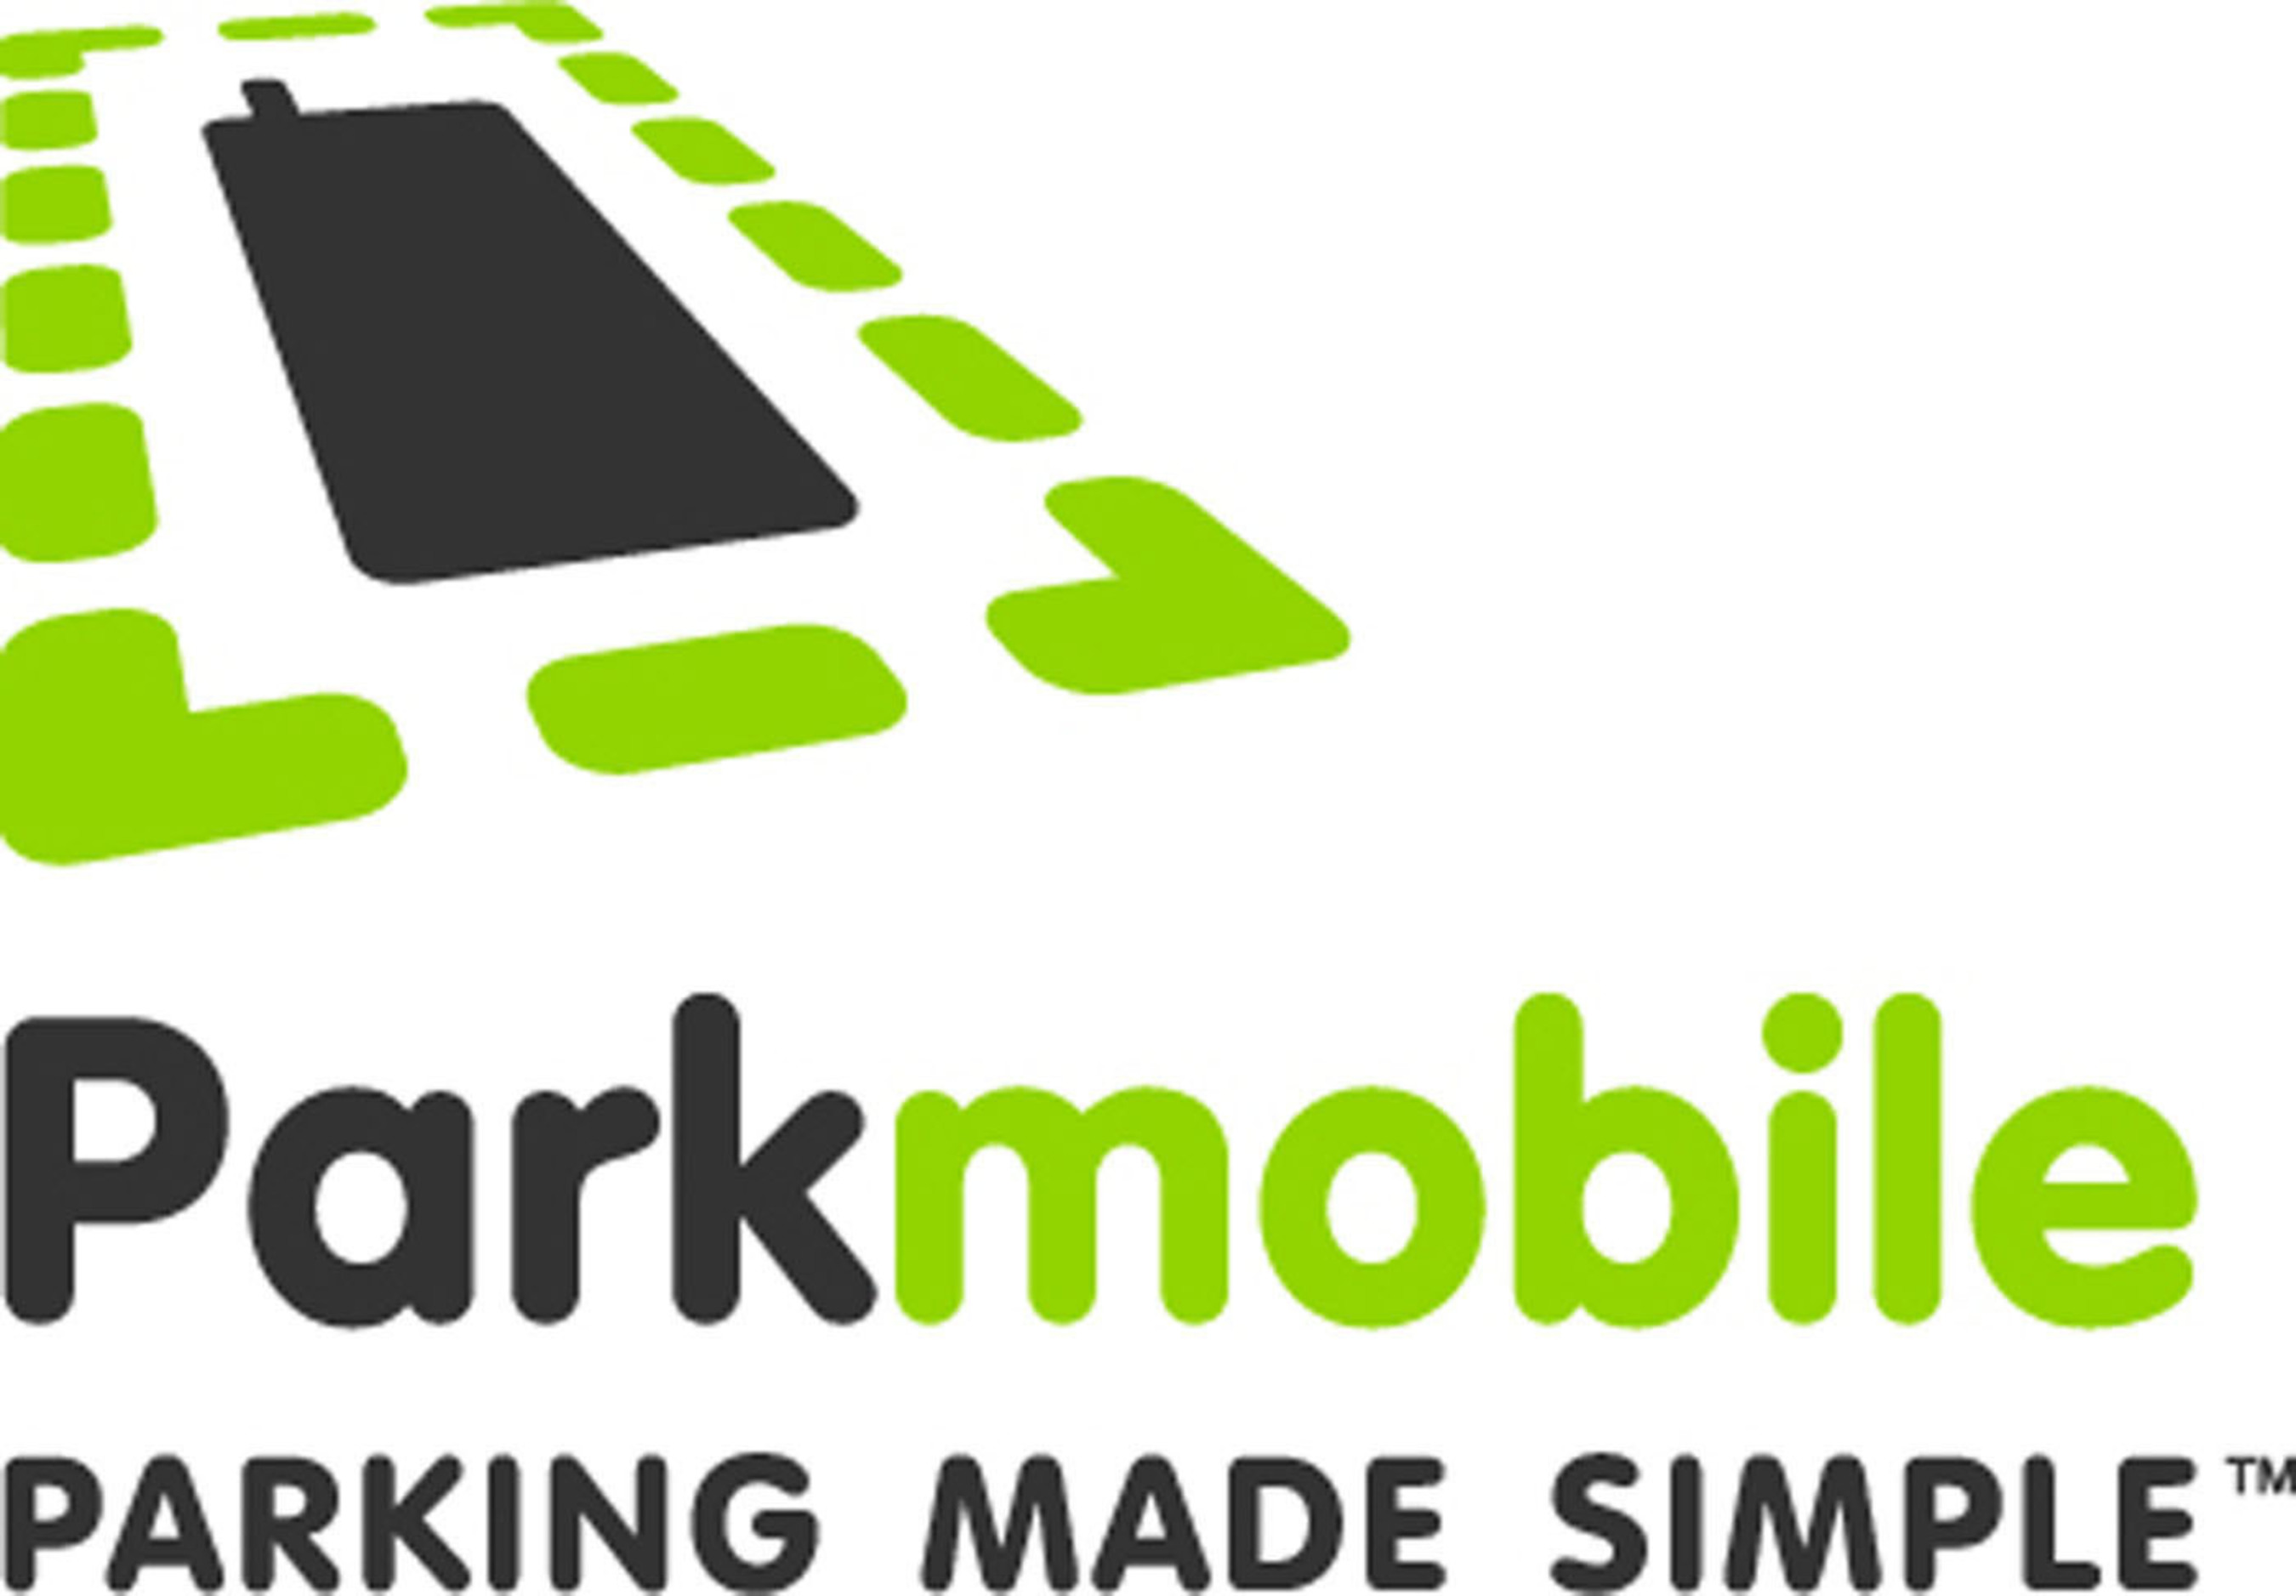 Parkmobile Logo. (PRNewsFoto/Parkmobile USA, Inc.) (PRNewsFoto/)